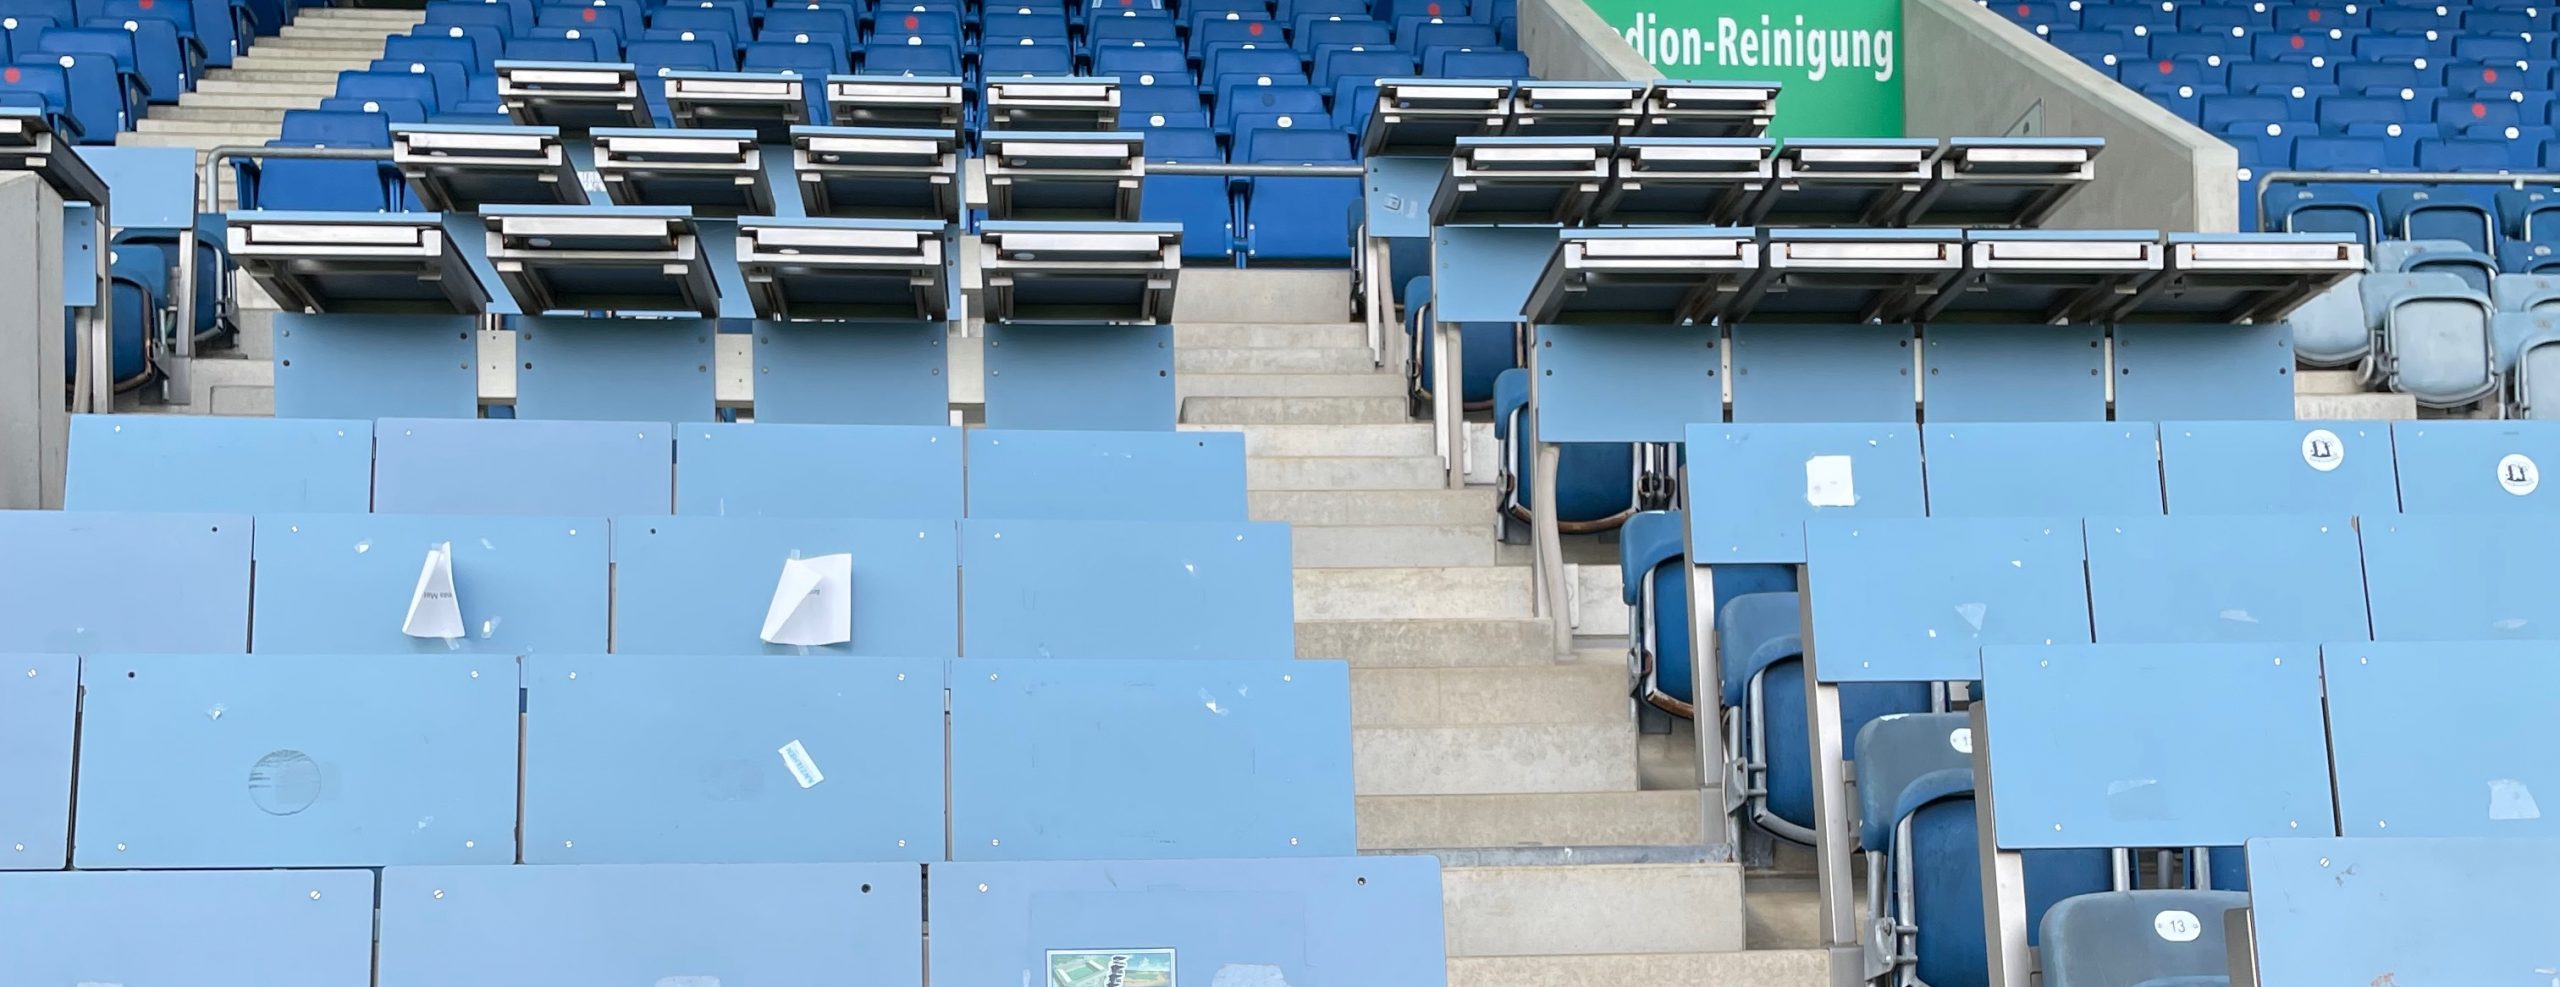 Ostseestadion: Eliminate seat kills